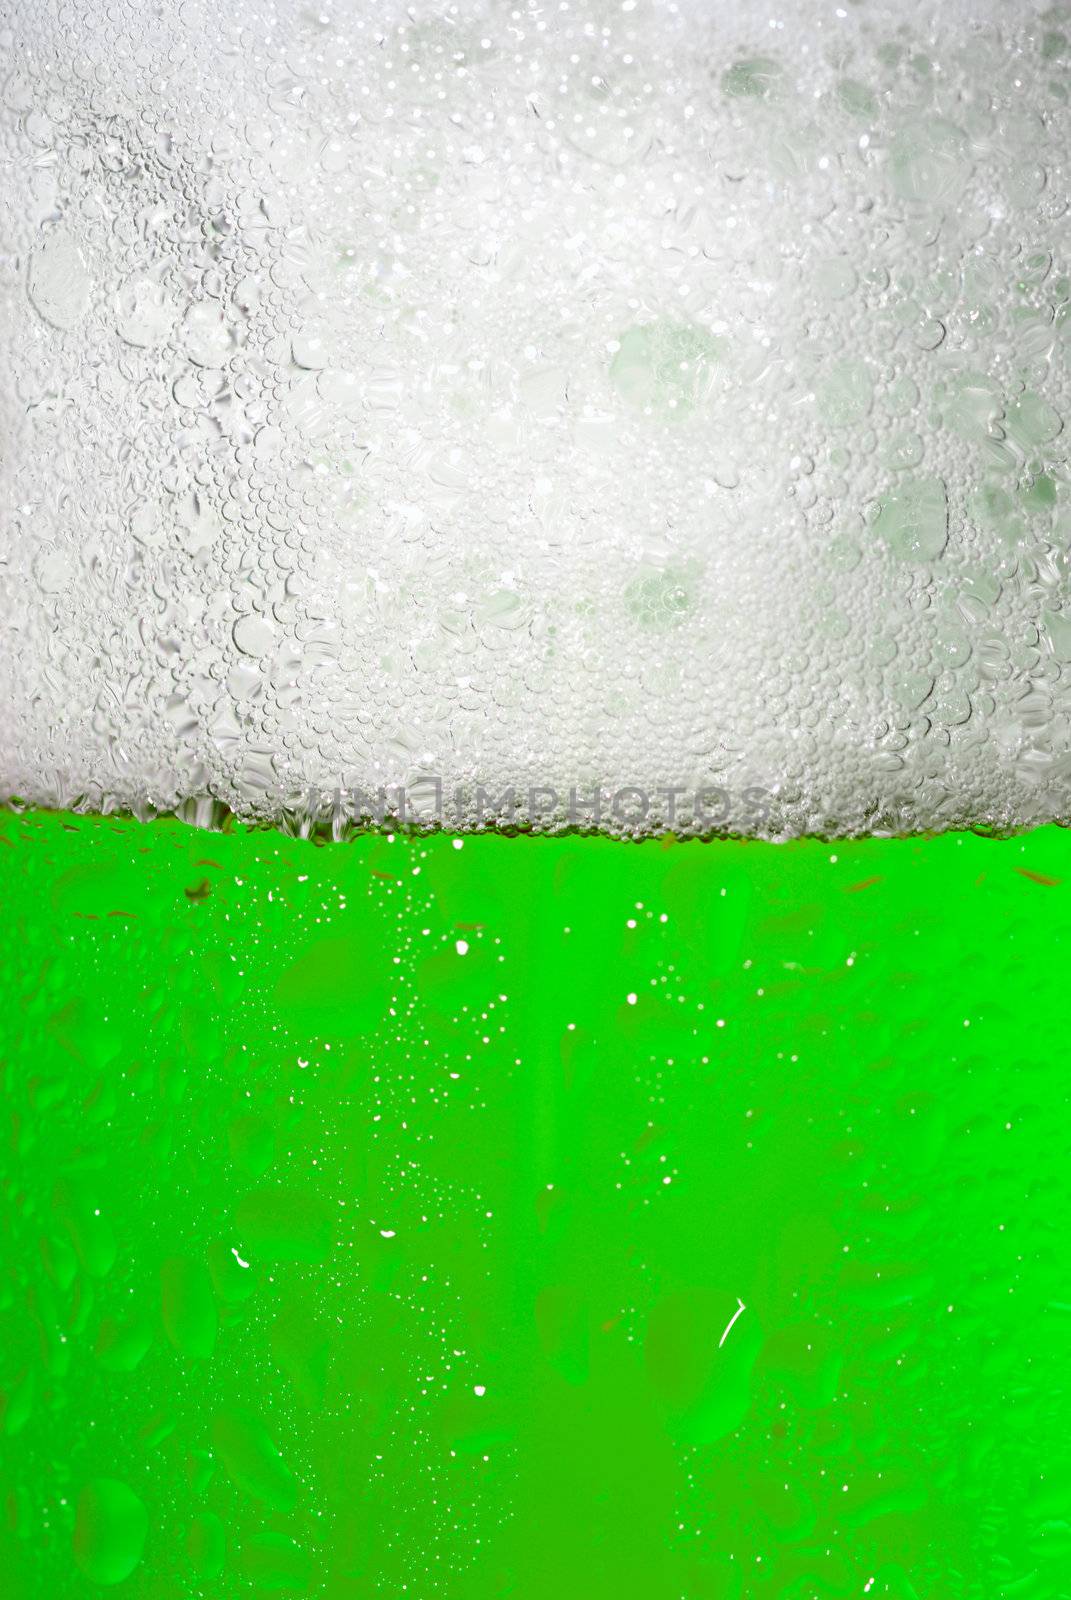 Green Beer mug by haveseen